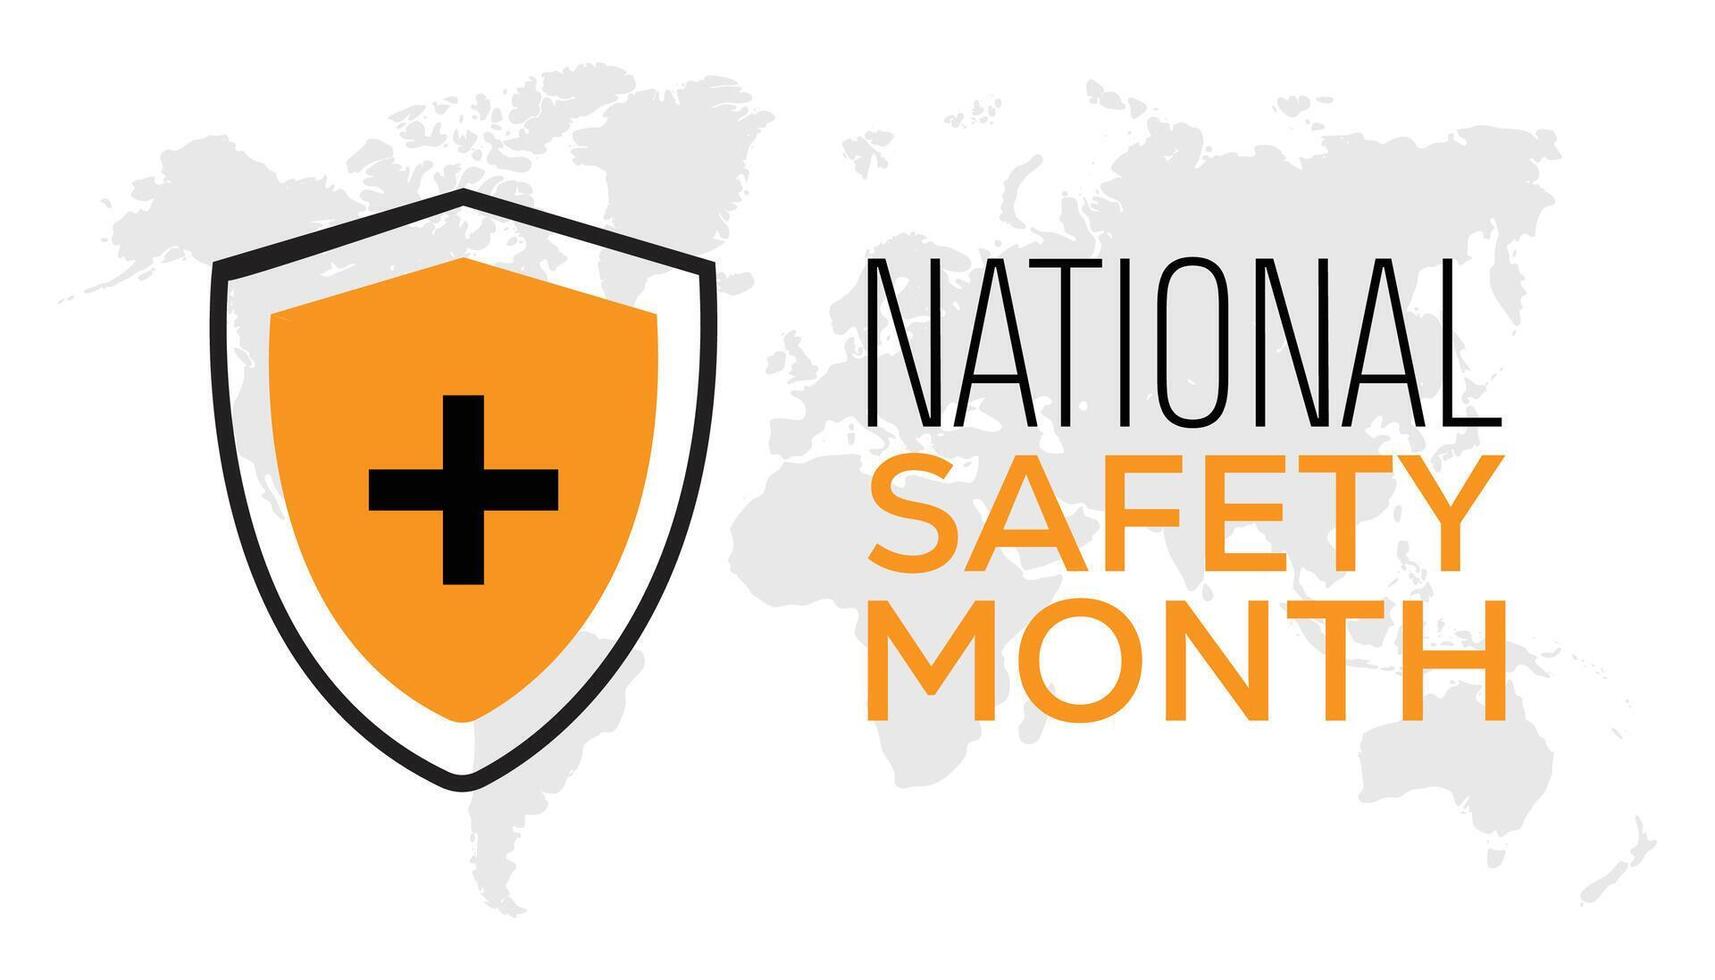 nationaal veiligheid maand opgemerkt elke jaar in juni. sjabloon voor achtergrond, banier, kaart, poster met tekst inscriptie. vector